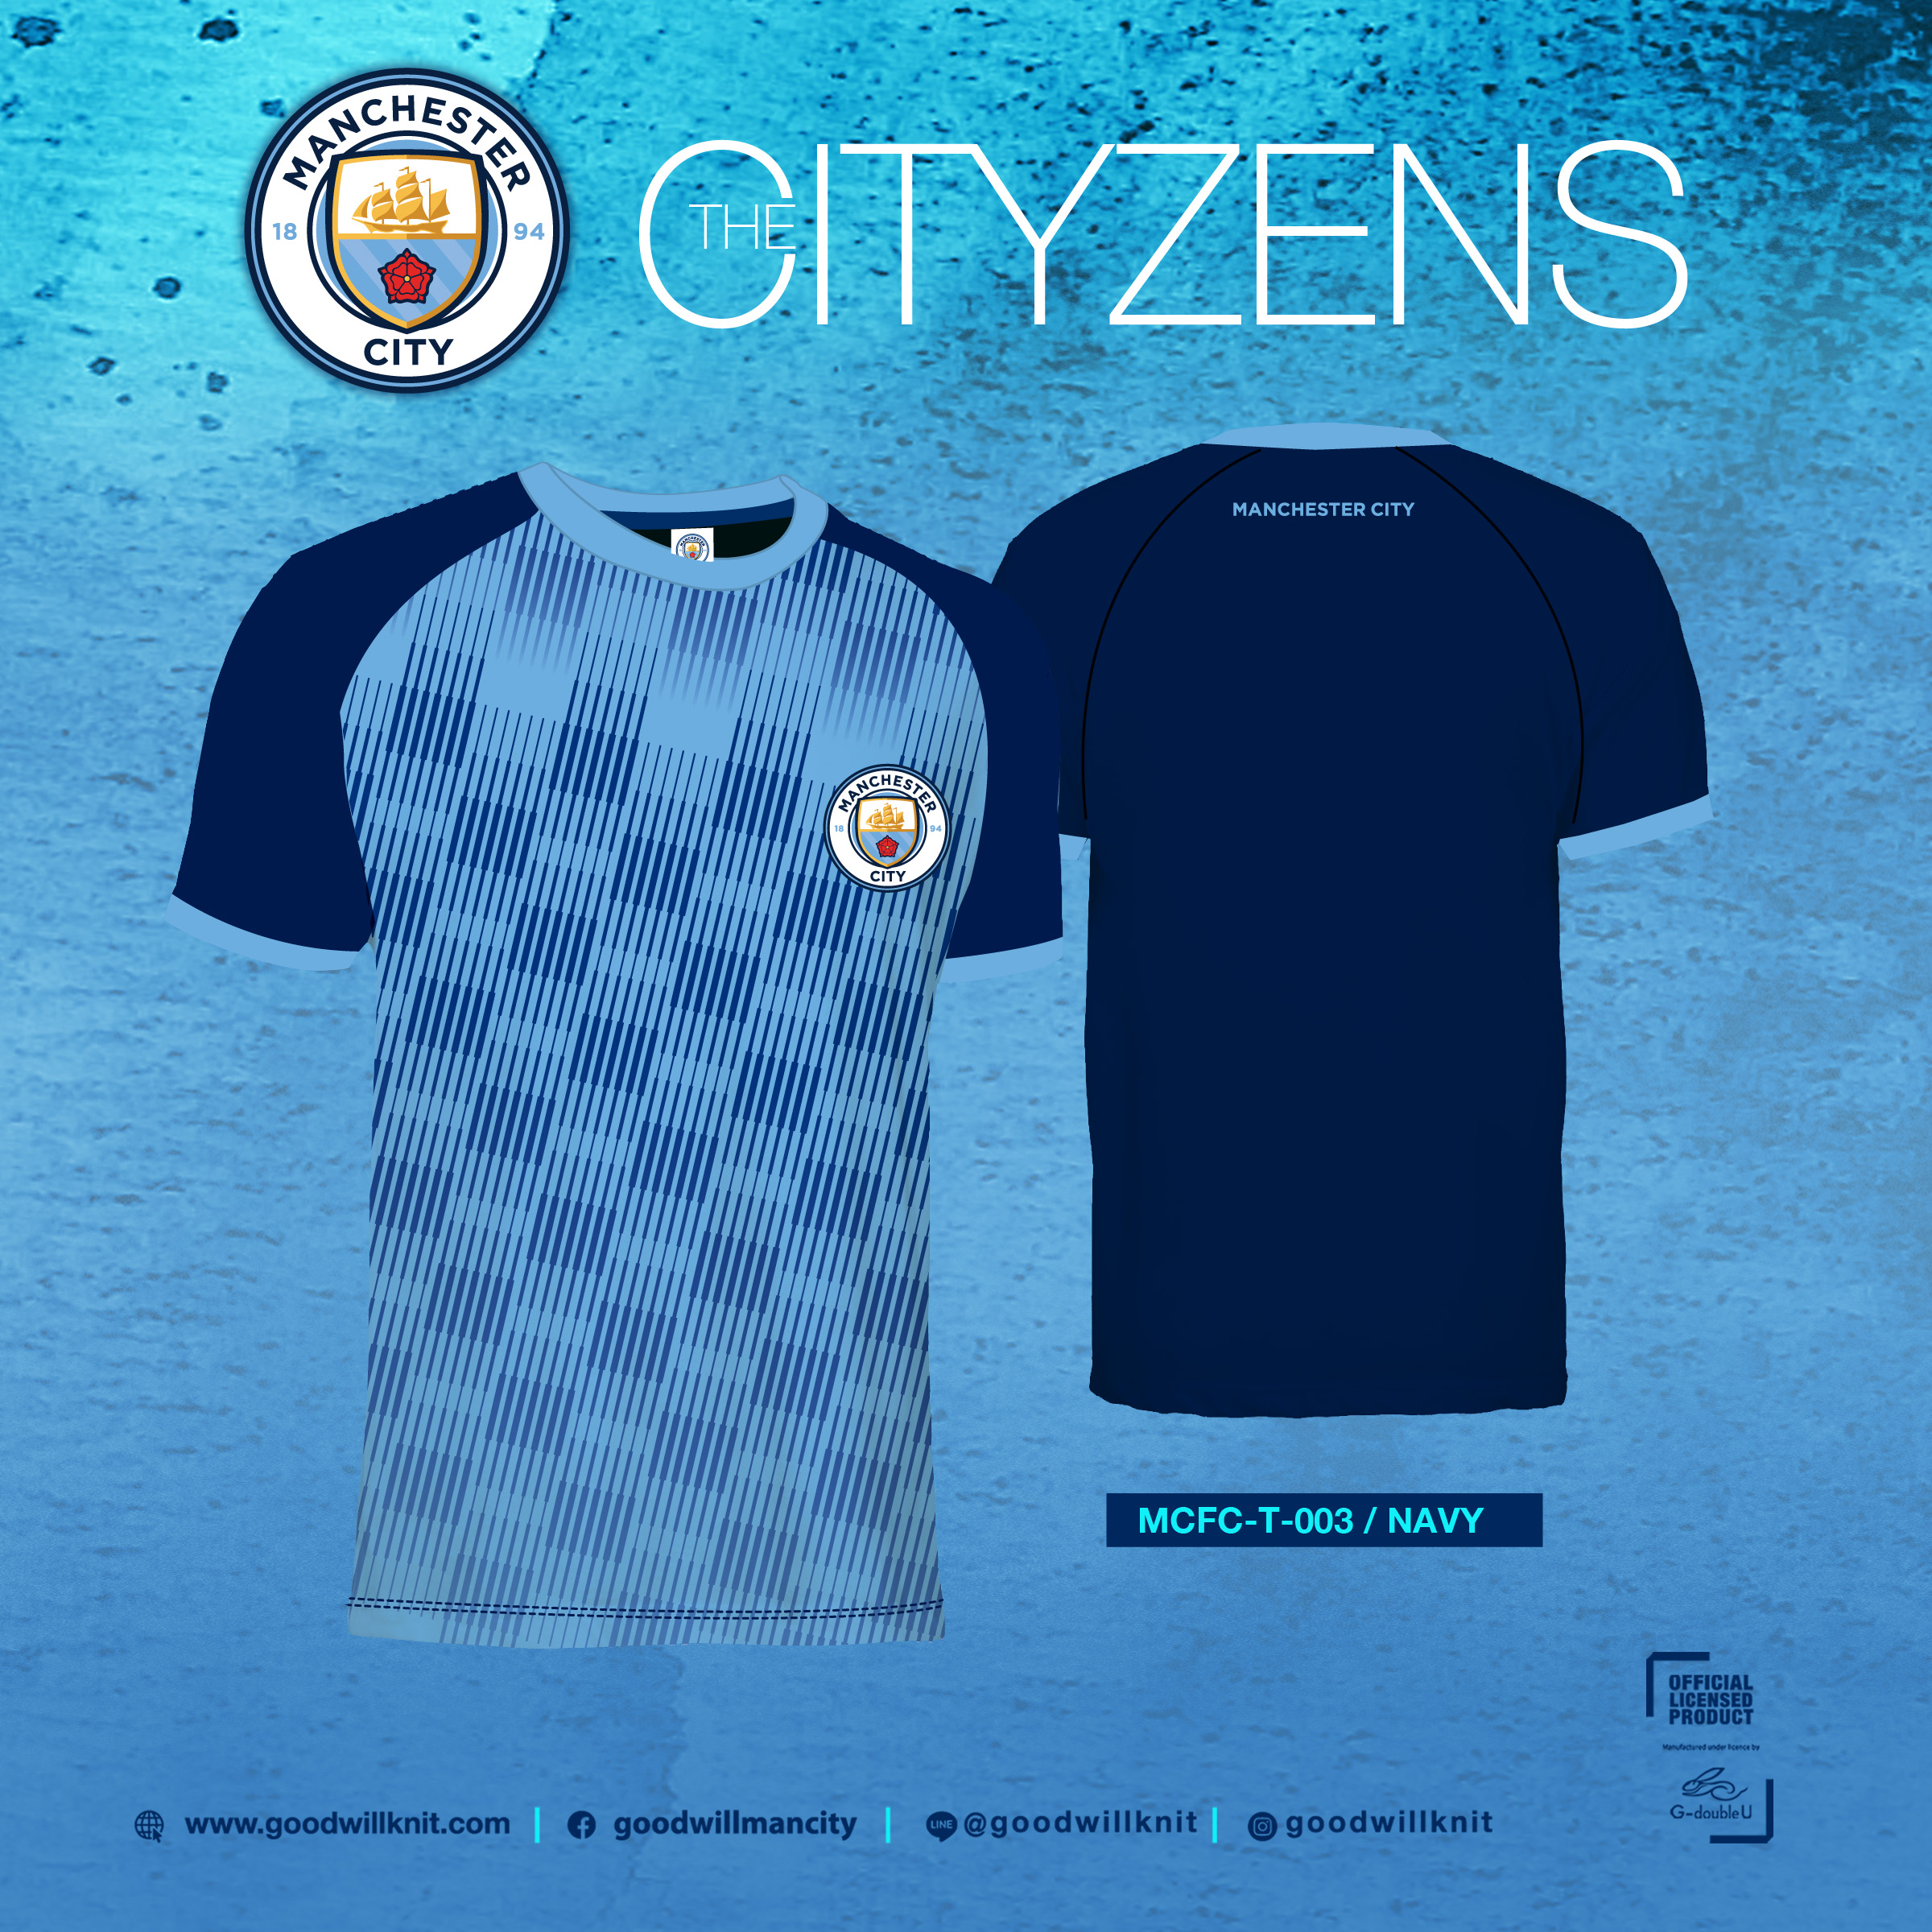 Goodwillknit Manchester City เสื้อคอกลม แมนซิตี้ ลิขสิทธิ์ ผ้ากีฬา รุ่น MT003 มี 2 สี